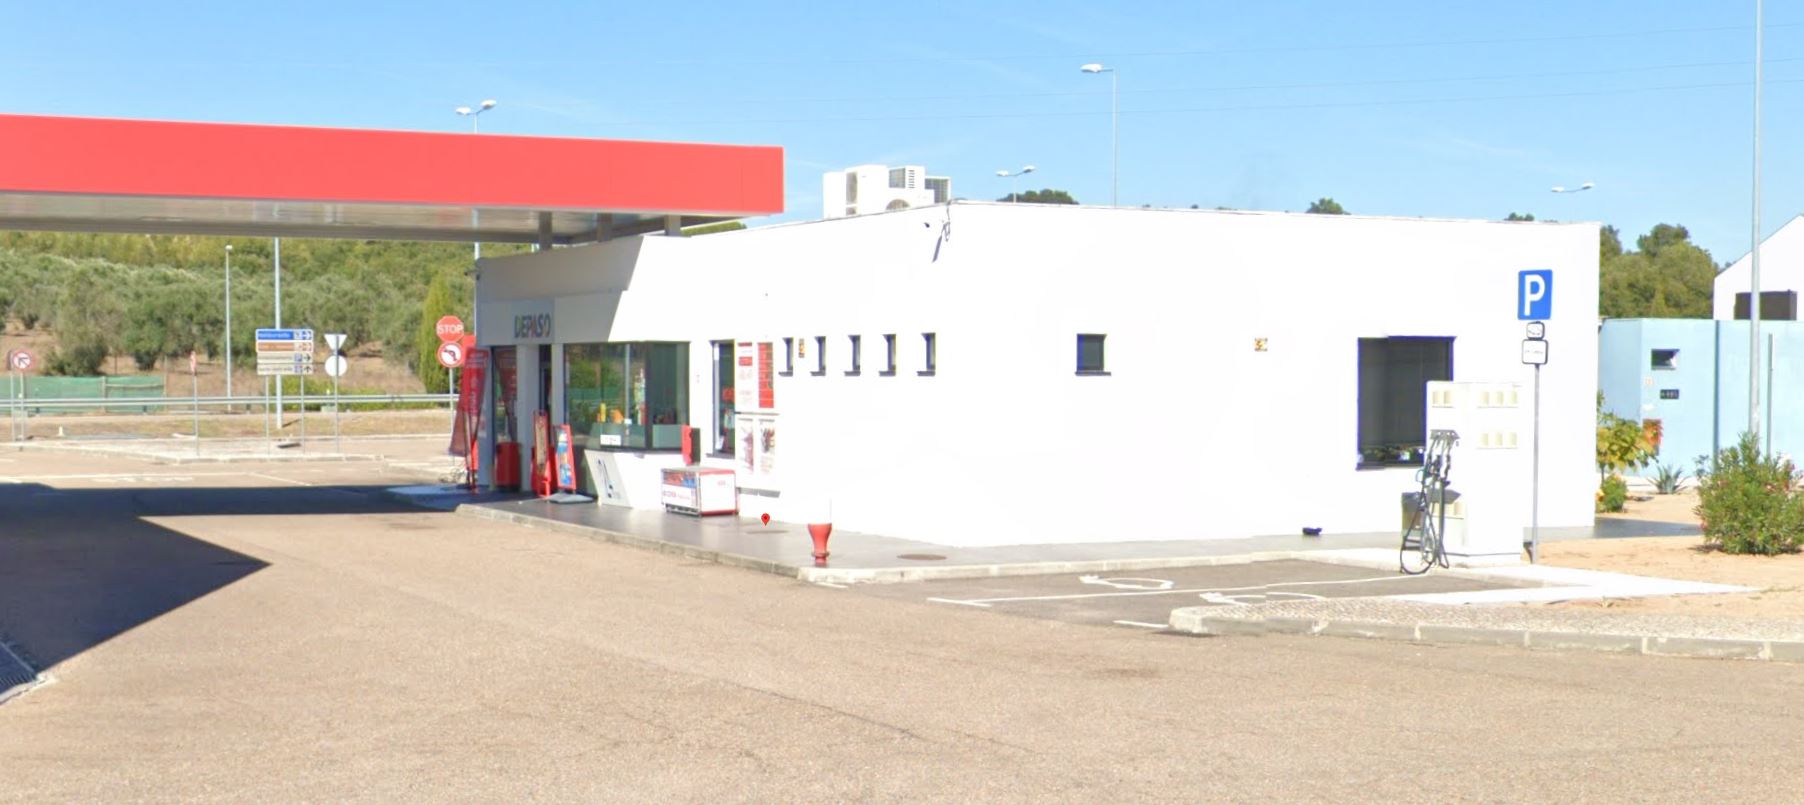 Estación de Carga de Vehículos Eléctricos Cepsa -A23 ABRANTES (ABR-LIS).JPG 0